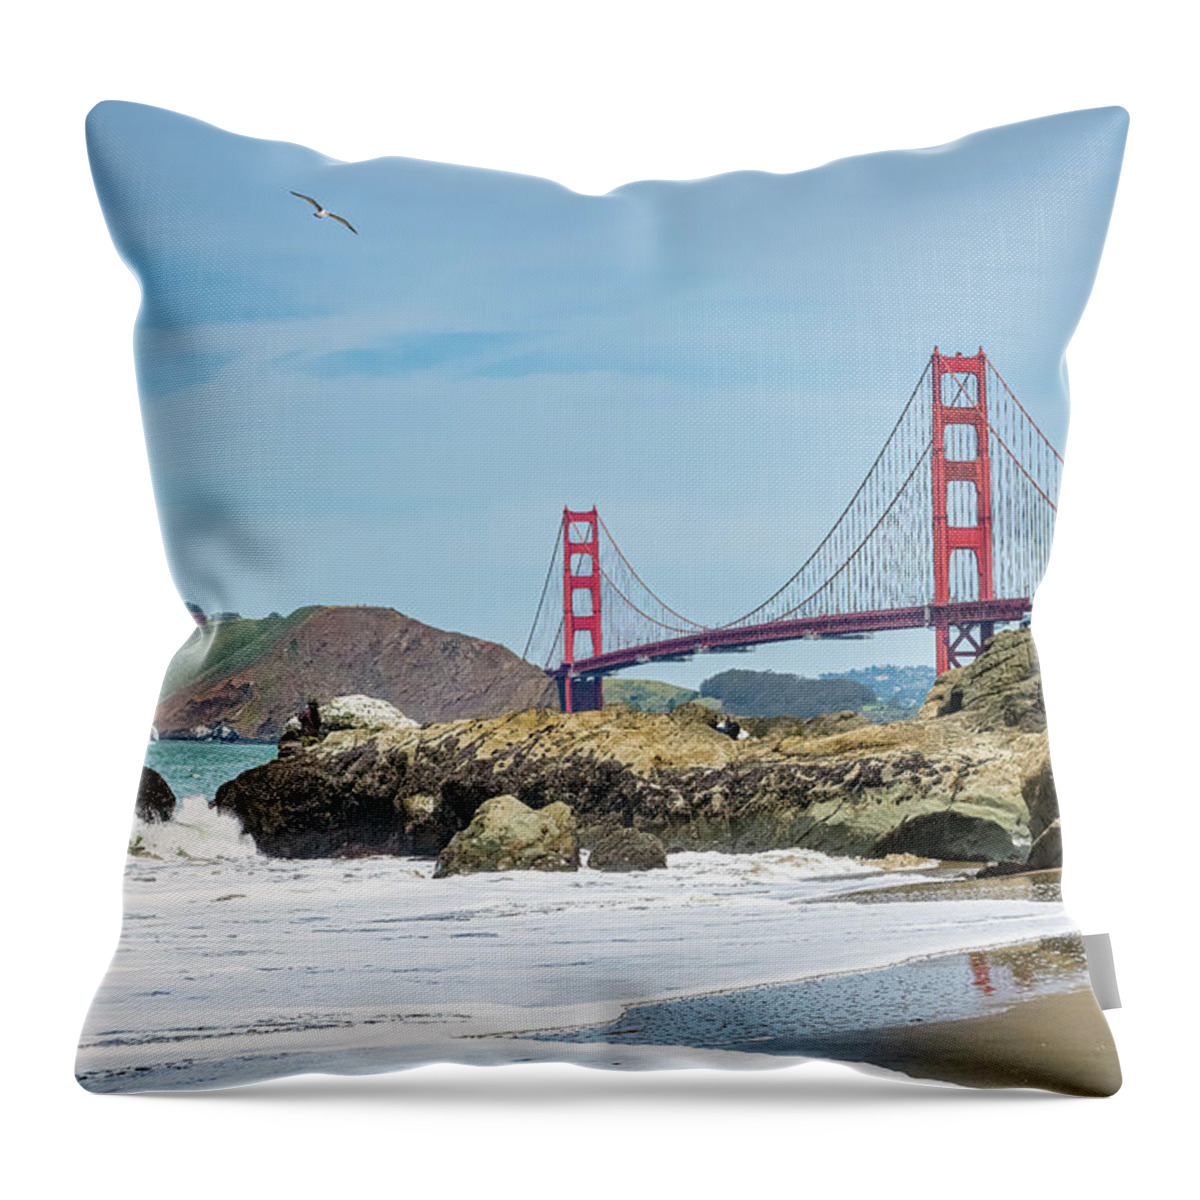 Golden Gate Bridge Throw Pillow featuring the photograph Baker Beach by Marla Brown